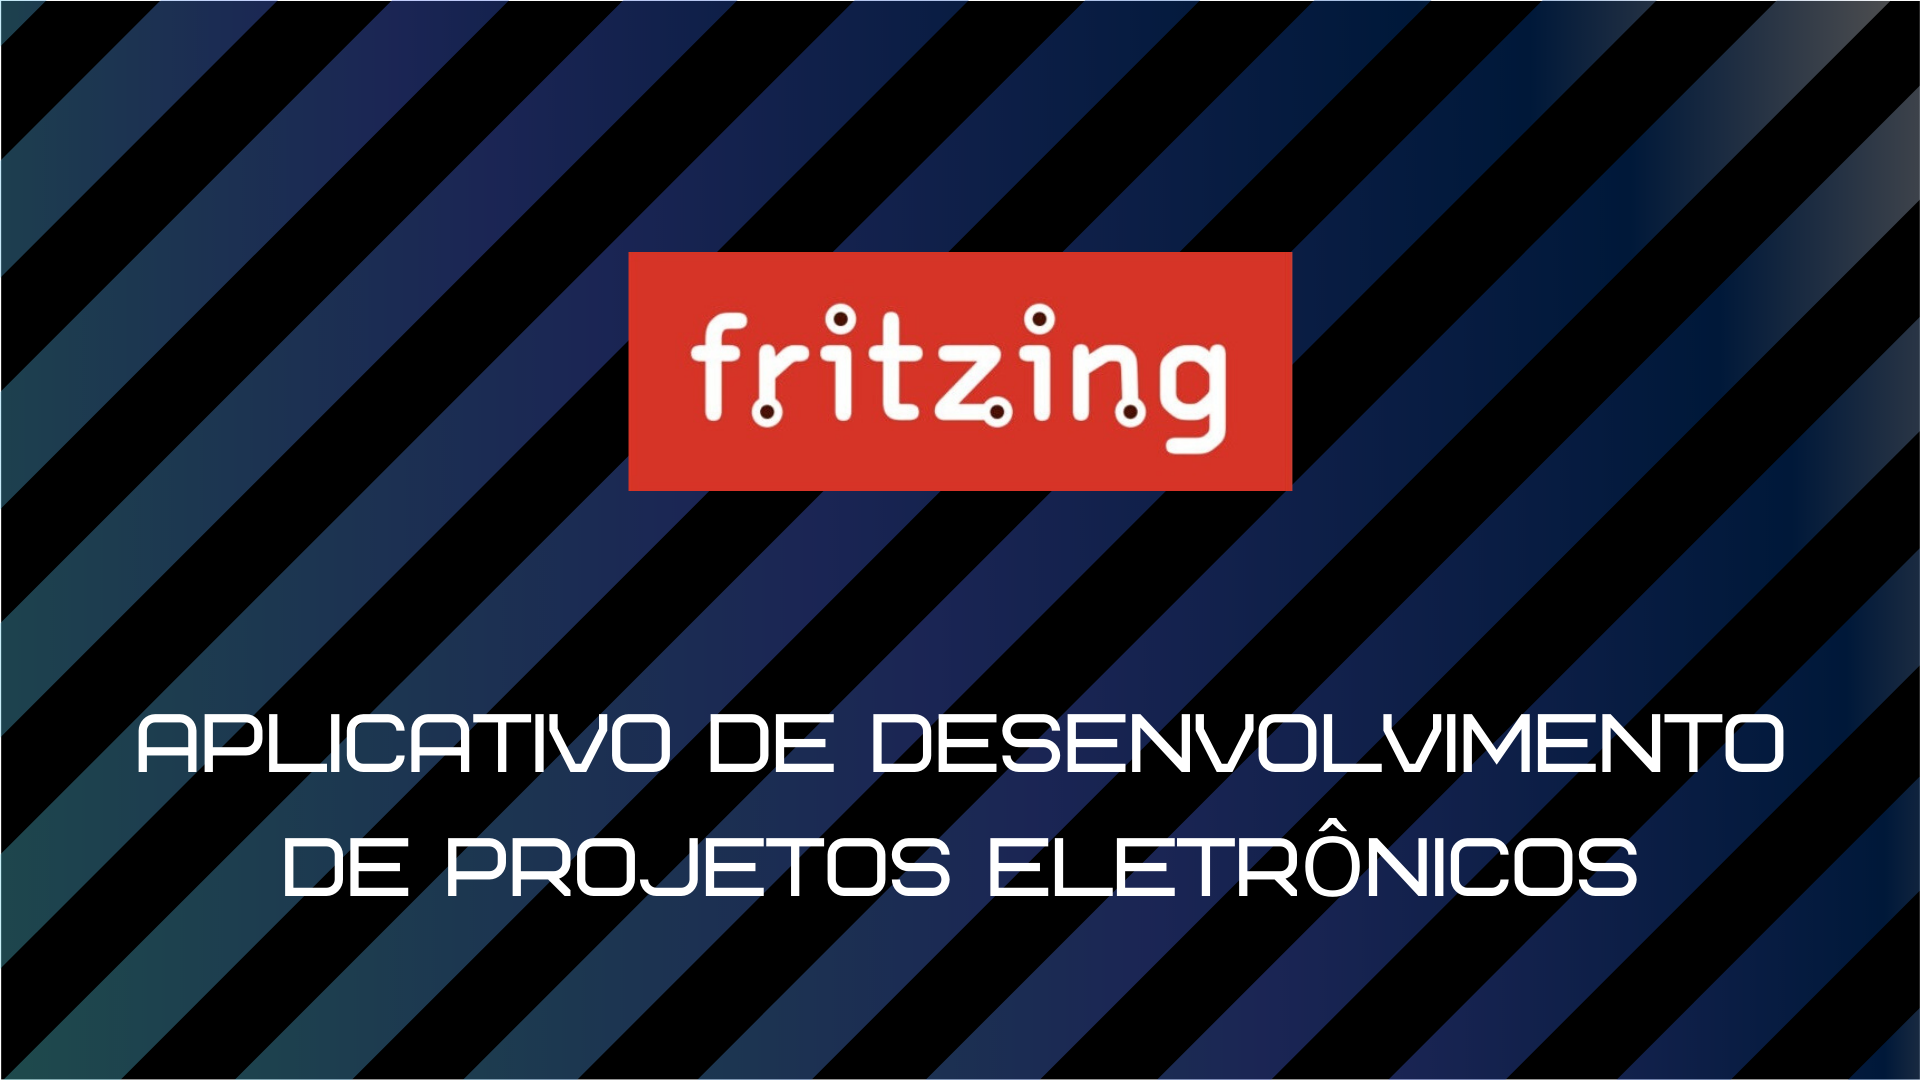 Você está visualizando atualmente Fritzing – Desenvolvimento de projetos eletrônicos